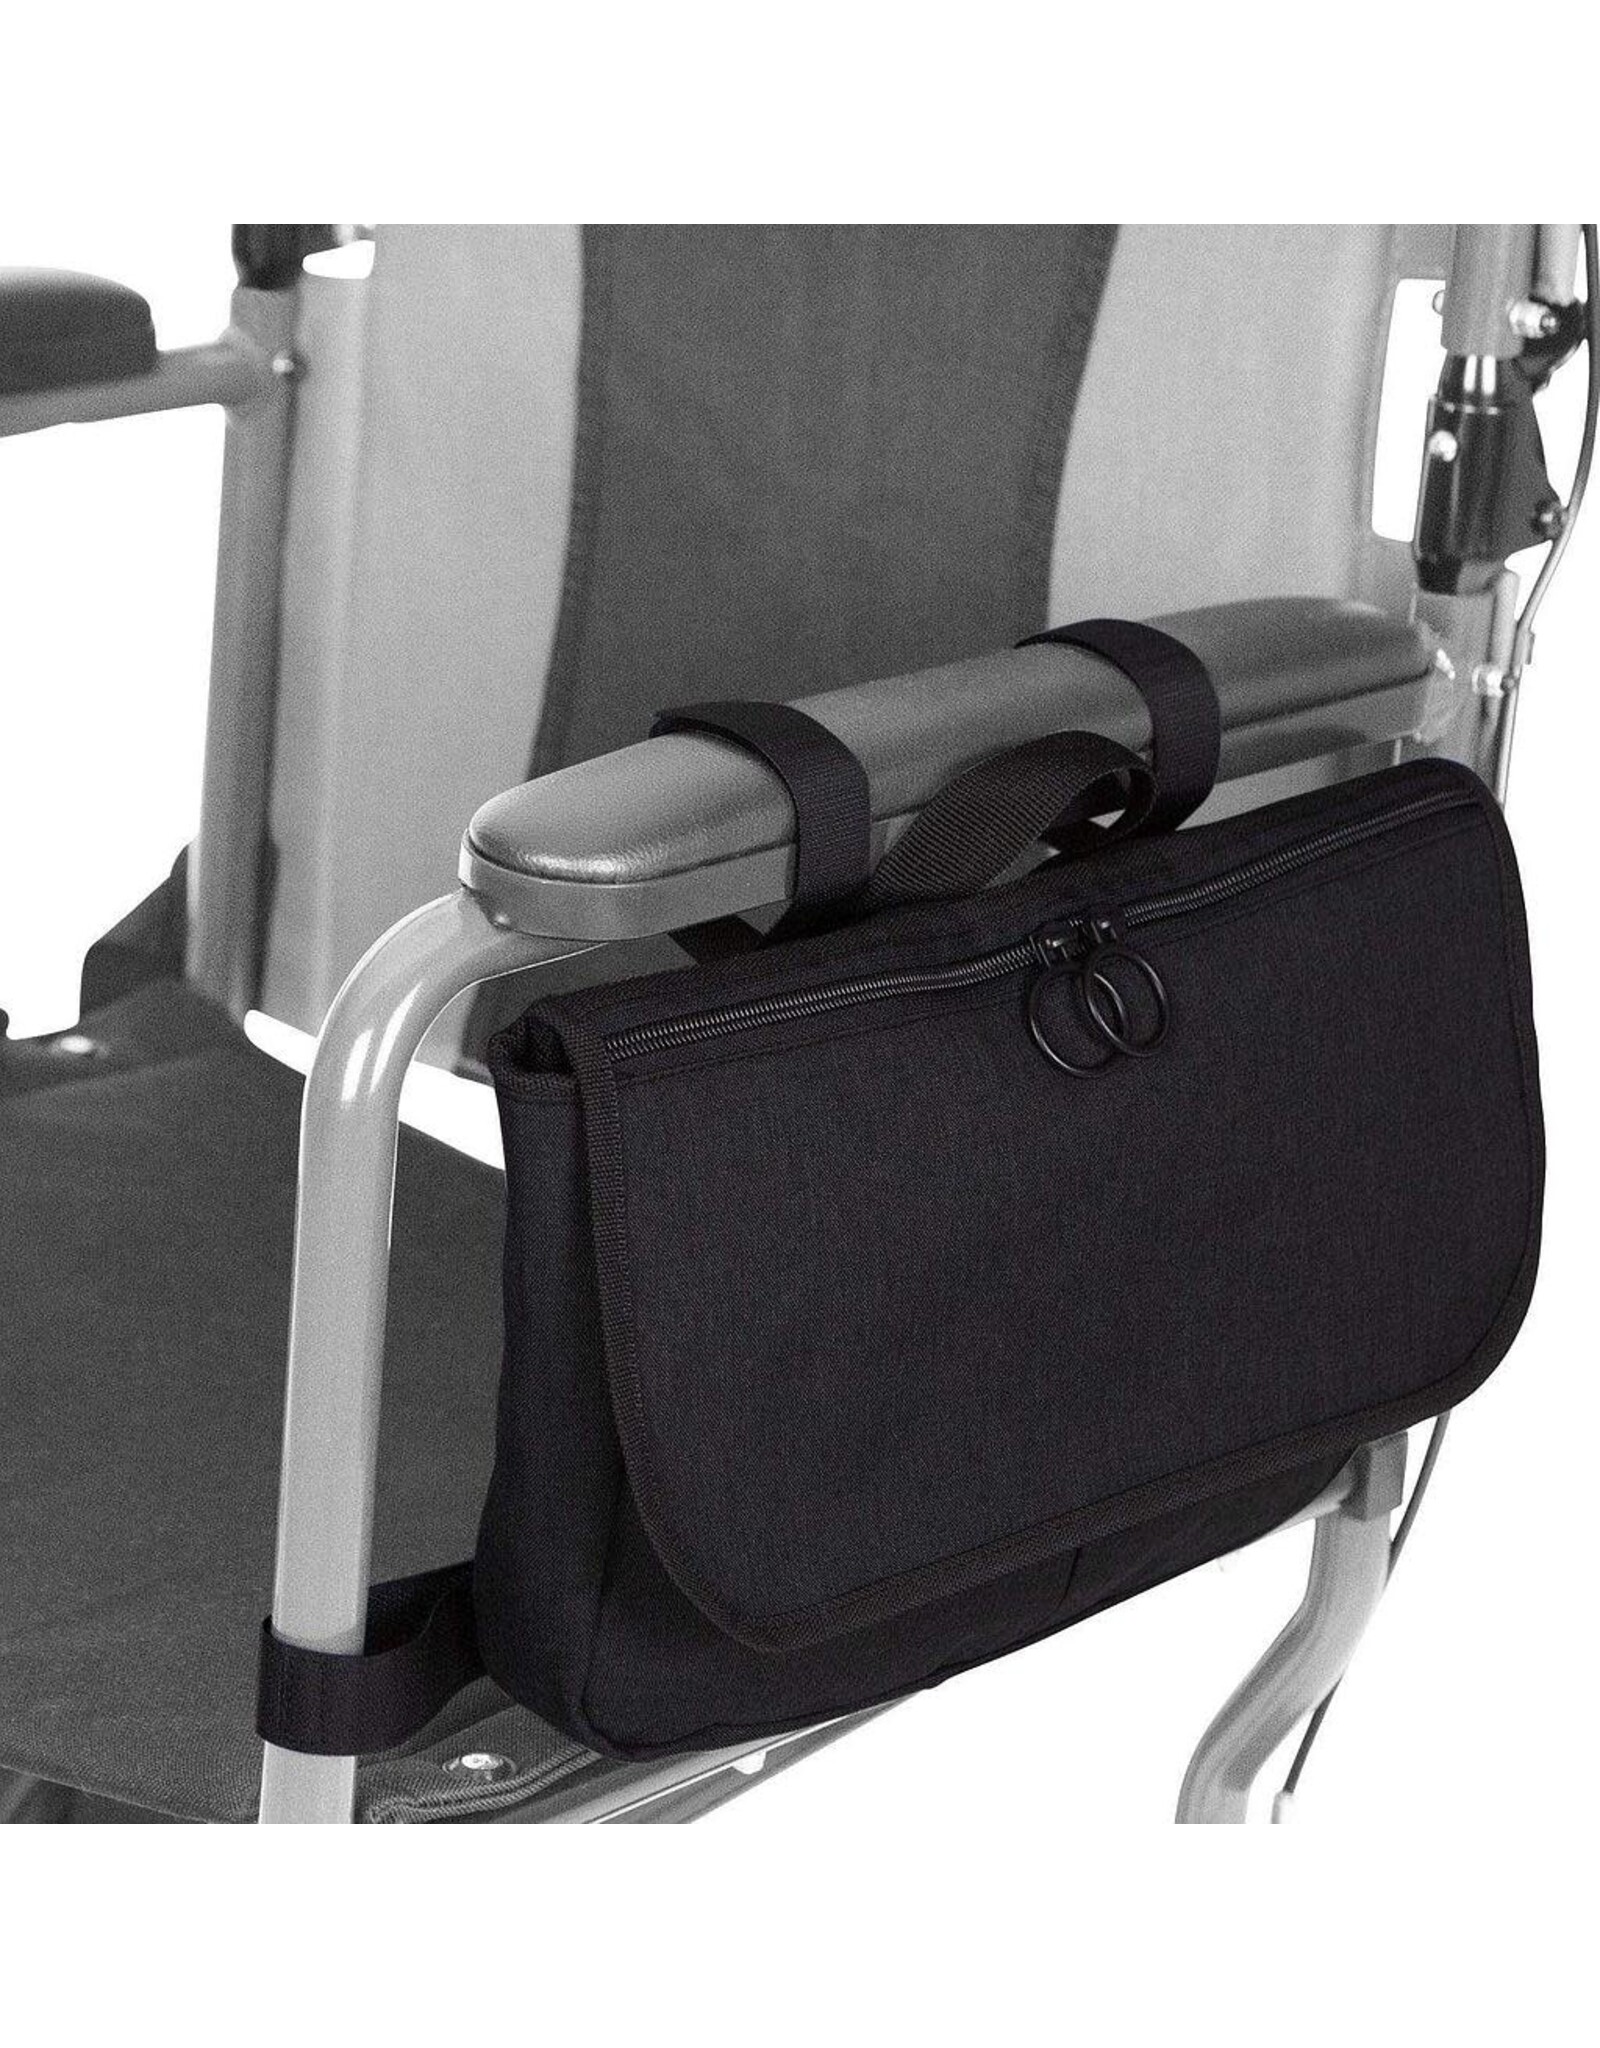 Vive Health Vive Mobility Side Bag